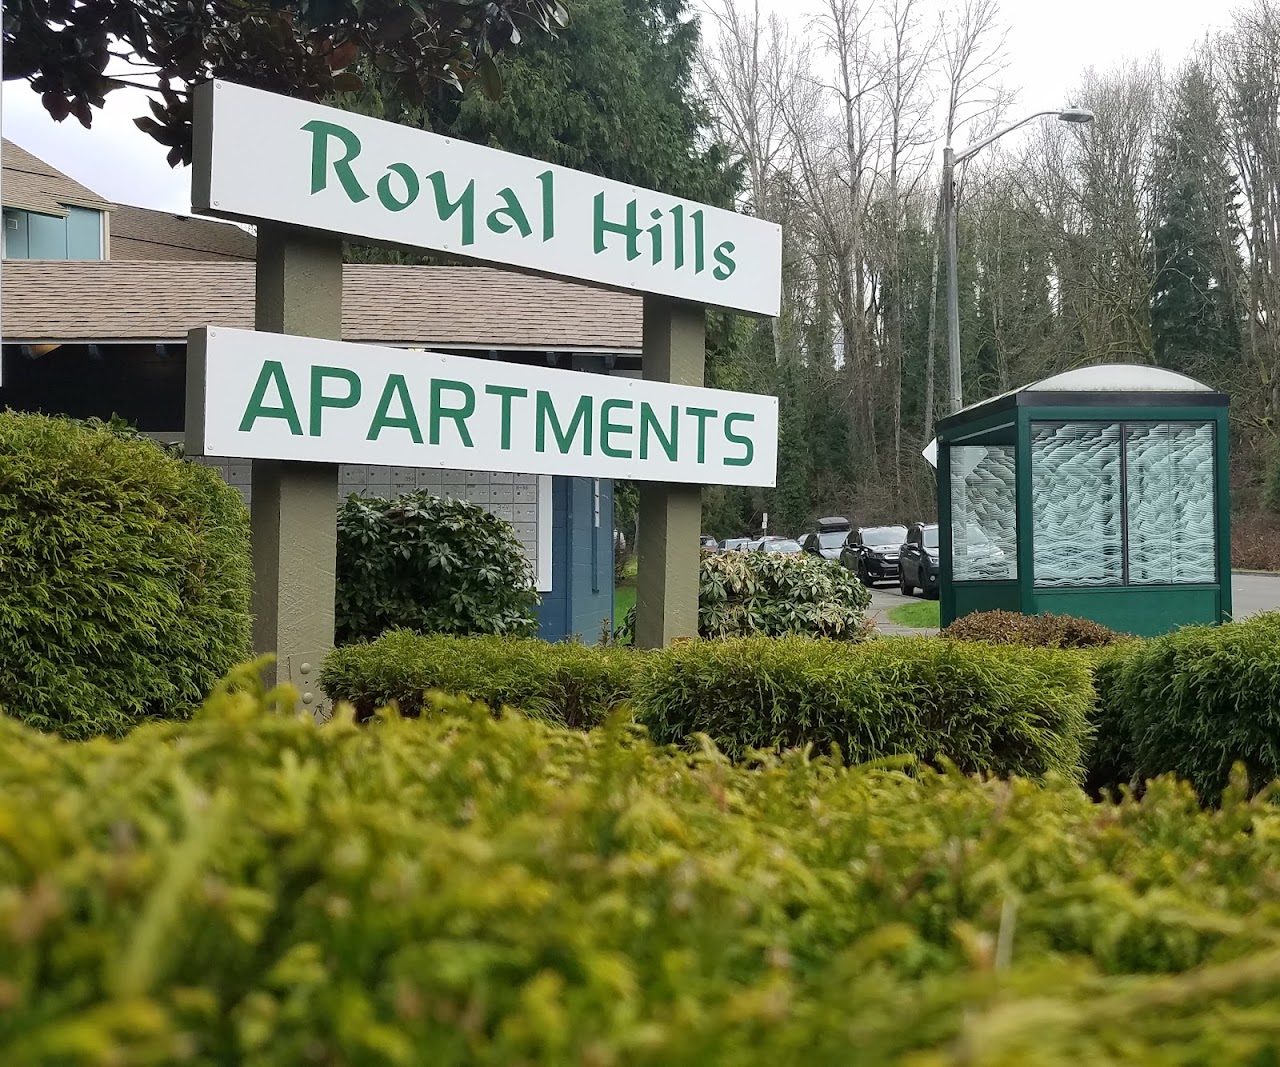 Photo of ROYAL HILLS APARTMENTS. Affordable housing located at 3000 SE ROYAL HILLS DRIVE RENTON, WA 98058